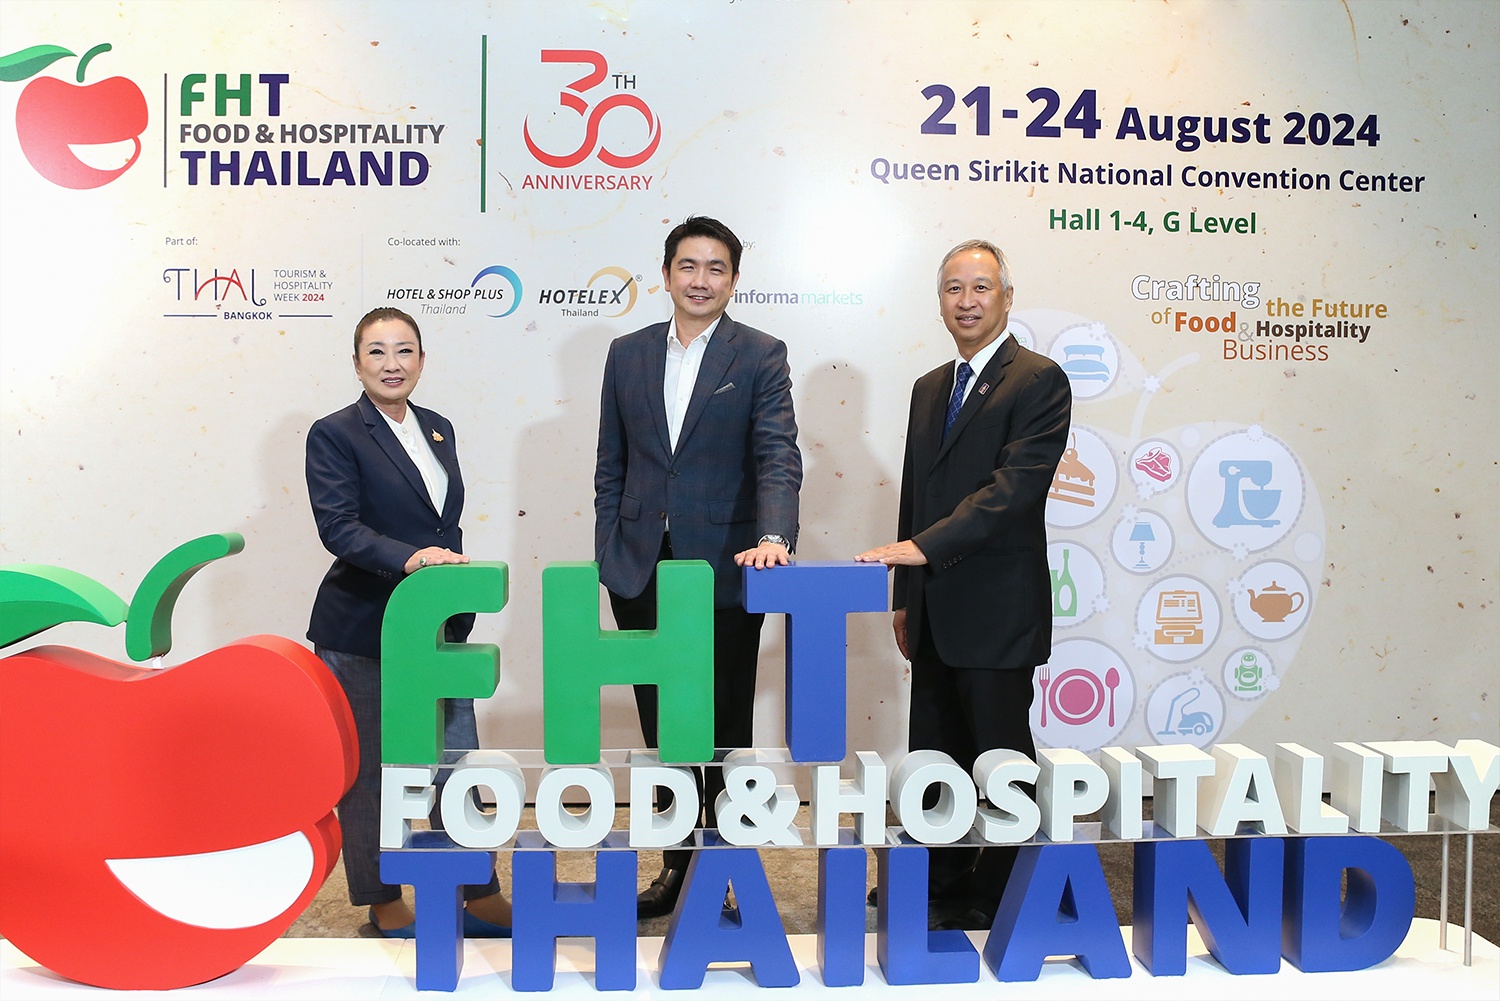 เที่ยวไทยไปต่อ องค์กรธุรกิจท่องเที่ยวและการบริการ ร่วมจัดงาน Food & Hospitality Thailand 2024  เสริมศักยภาพผู้ประกอบการเตรียมรับนักท่องเที่ยวไฮซีซั่นในปีนี้